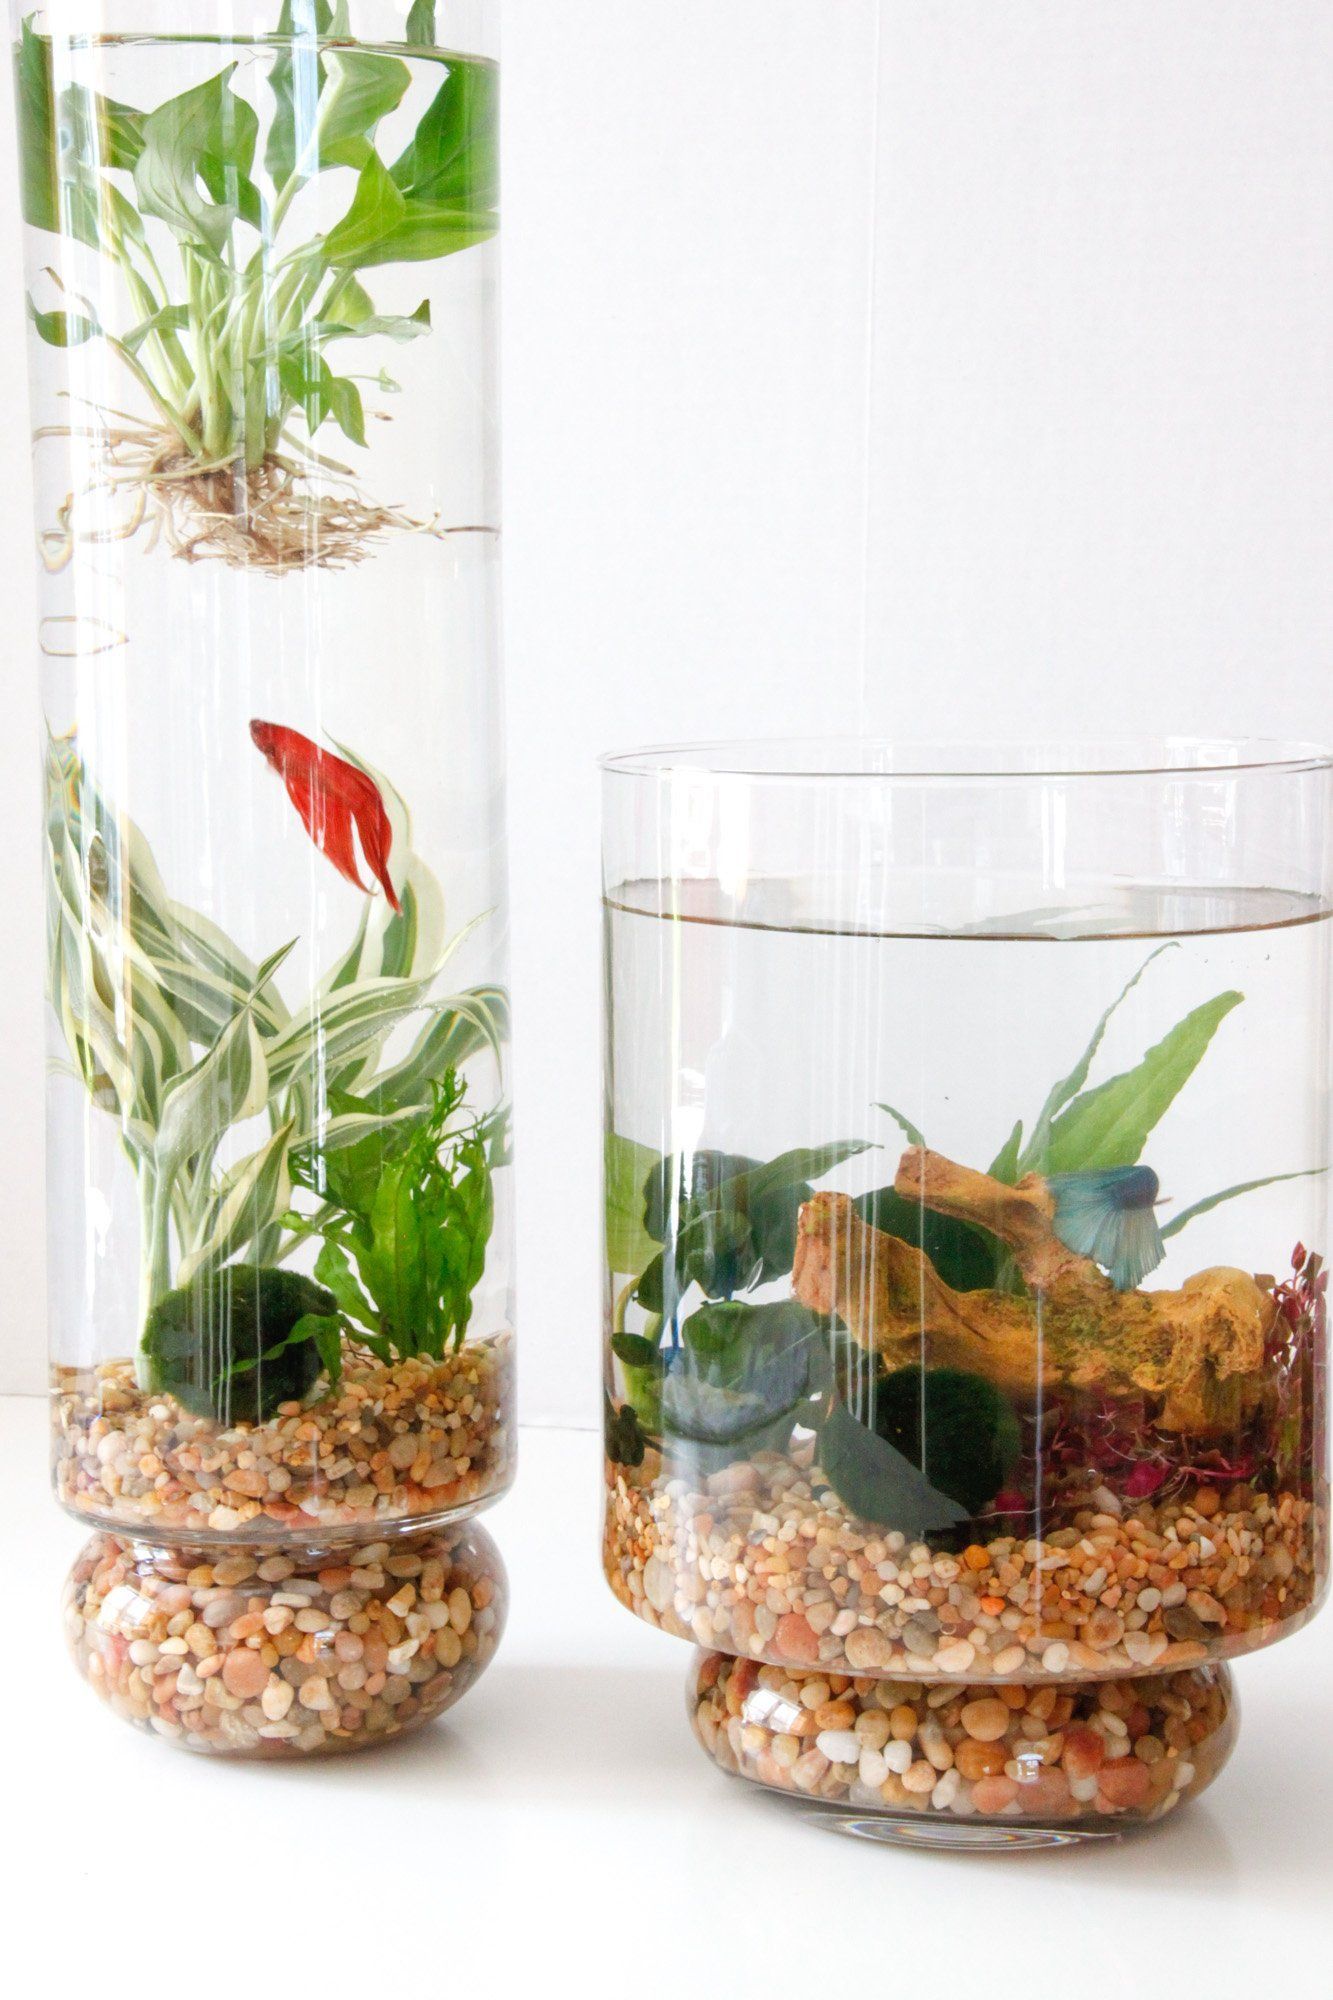 DIY: Indoor Water Garden | Tilly's Nest -   16 planting design water ideas